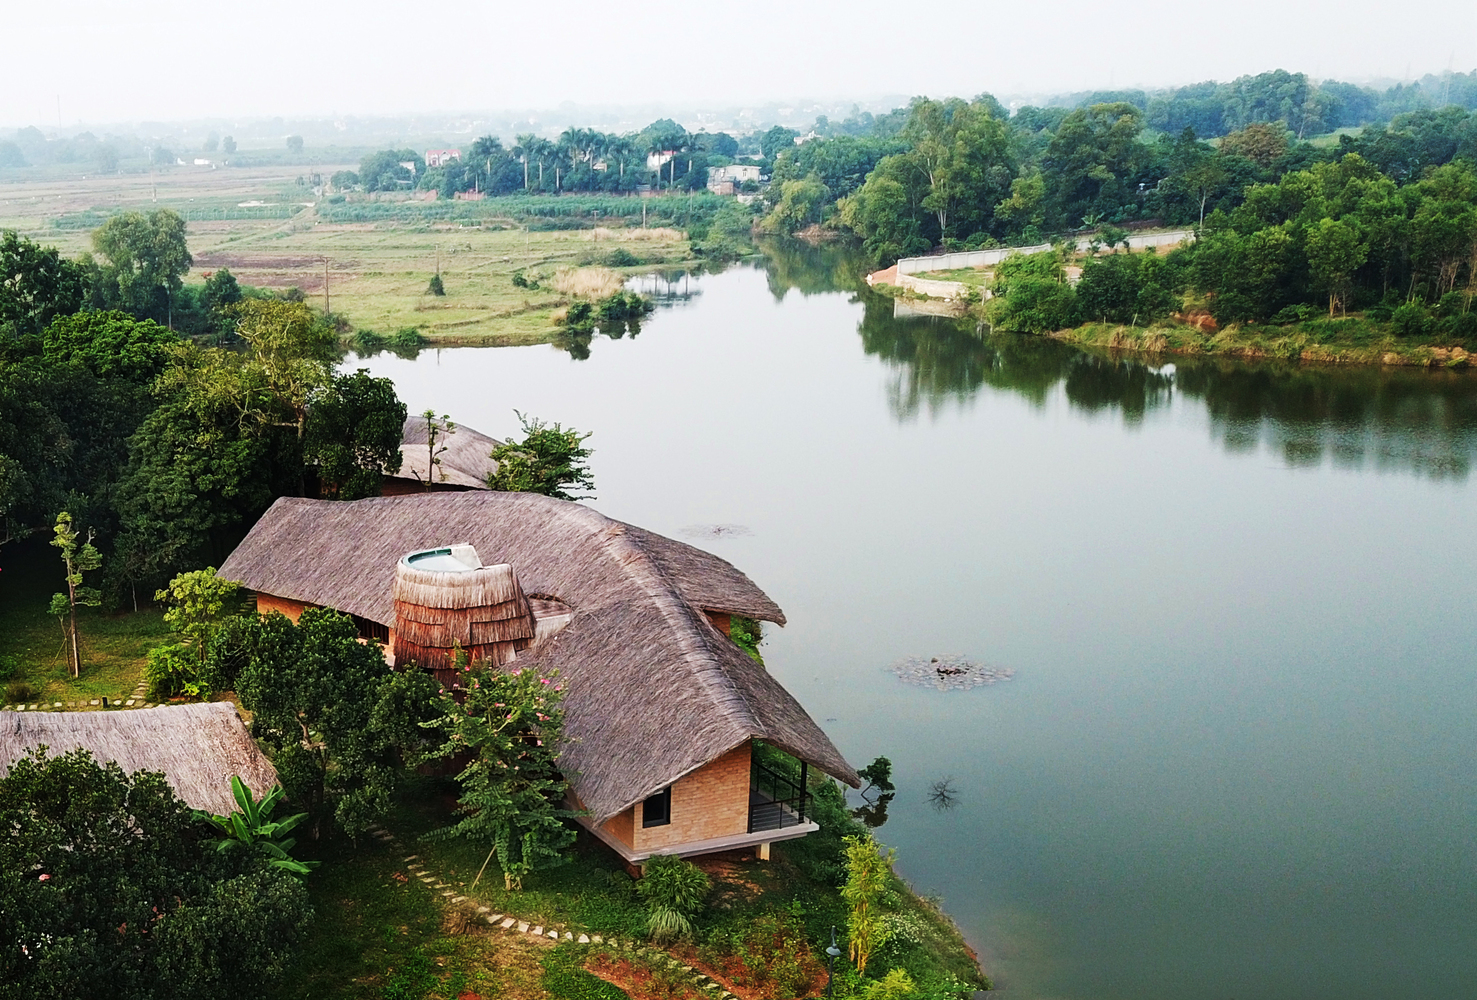 Ngôi nhà view nhìn ra hồ nước tuyệt đẹp, kiến trúc gợi hình ảnh làng quê Việt tại ngoại thành Hà Nội - Ảnh 1